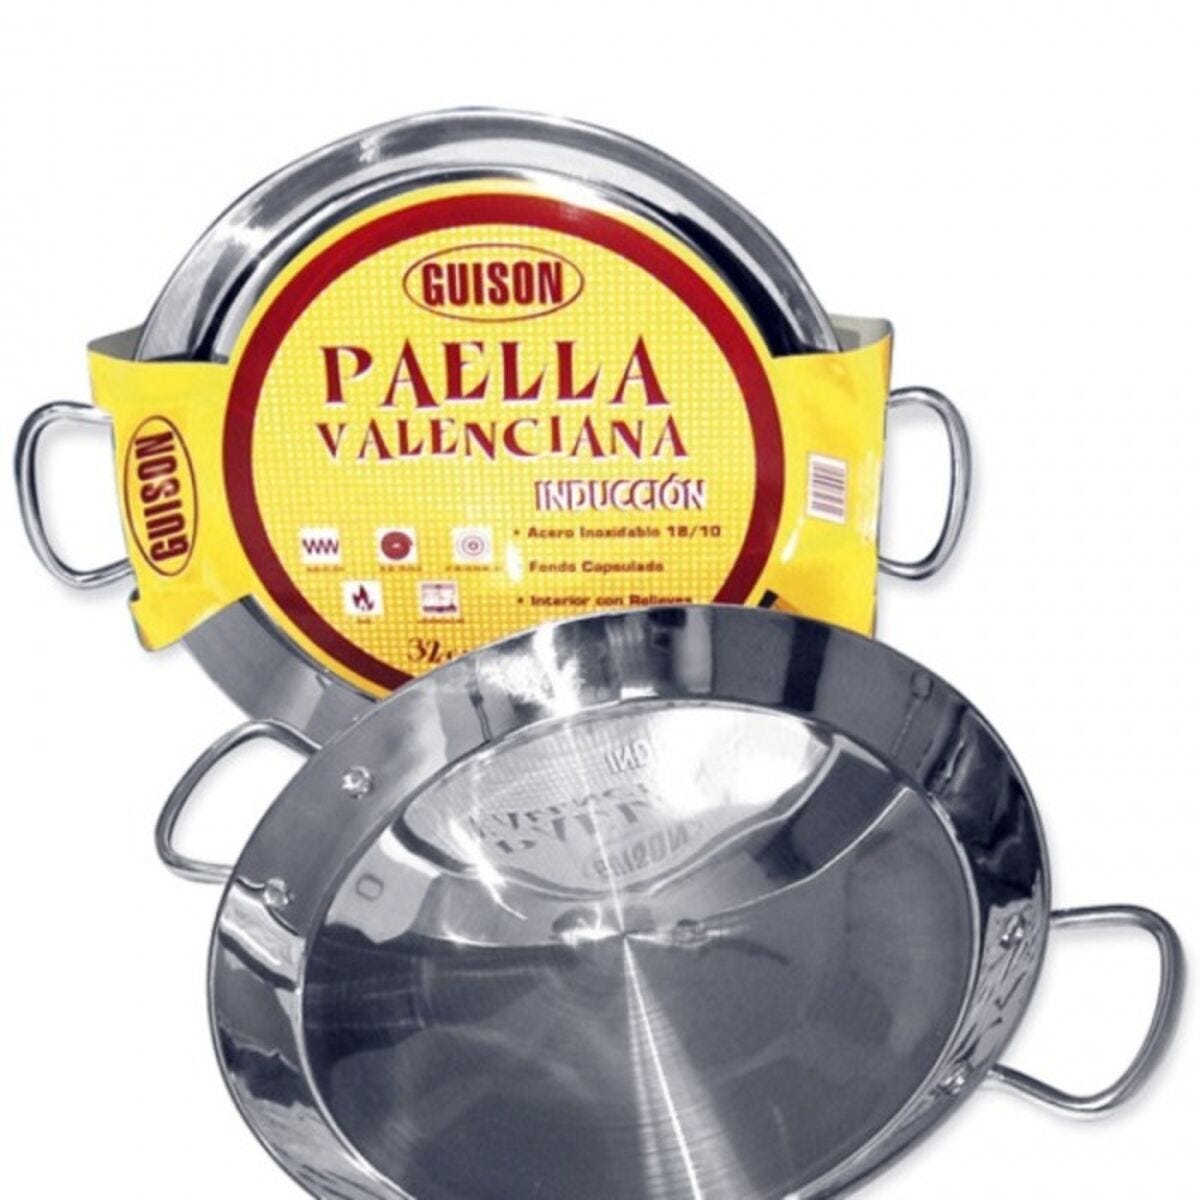 Couvercle 32cm en acier inoxydable pour poêles à Paella